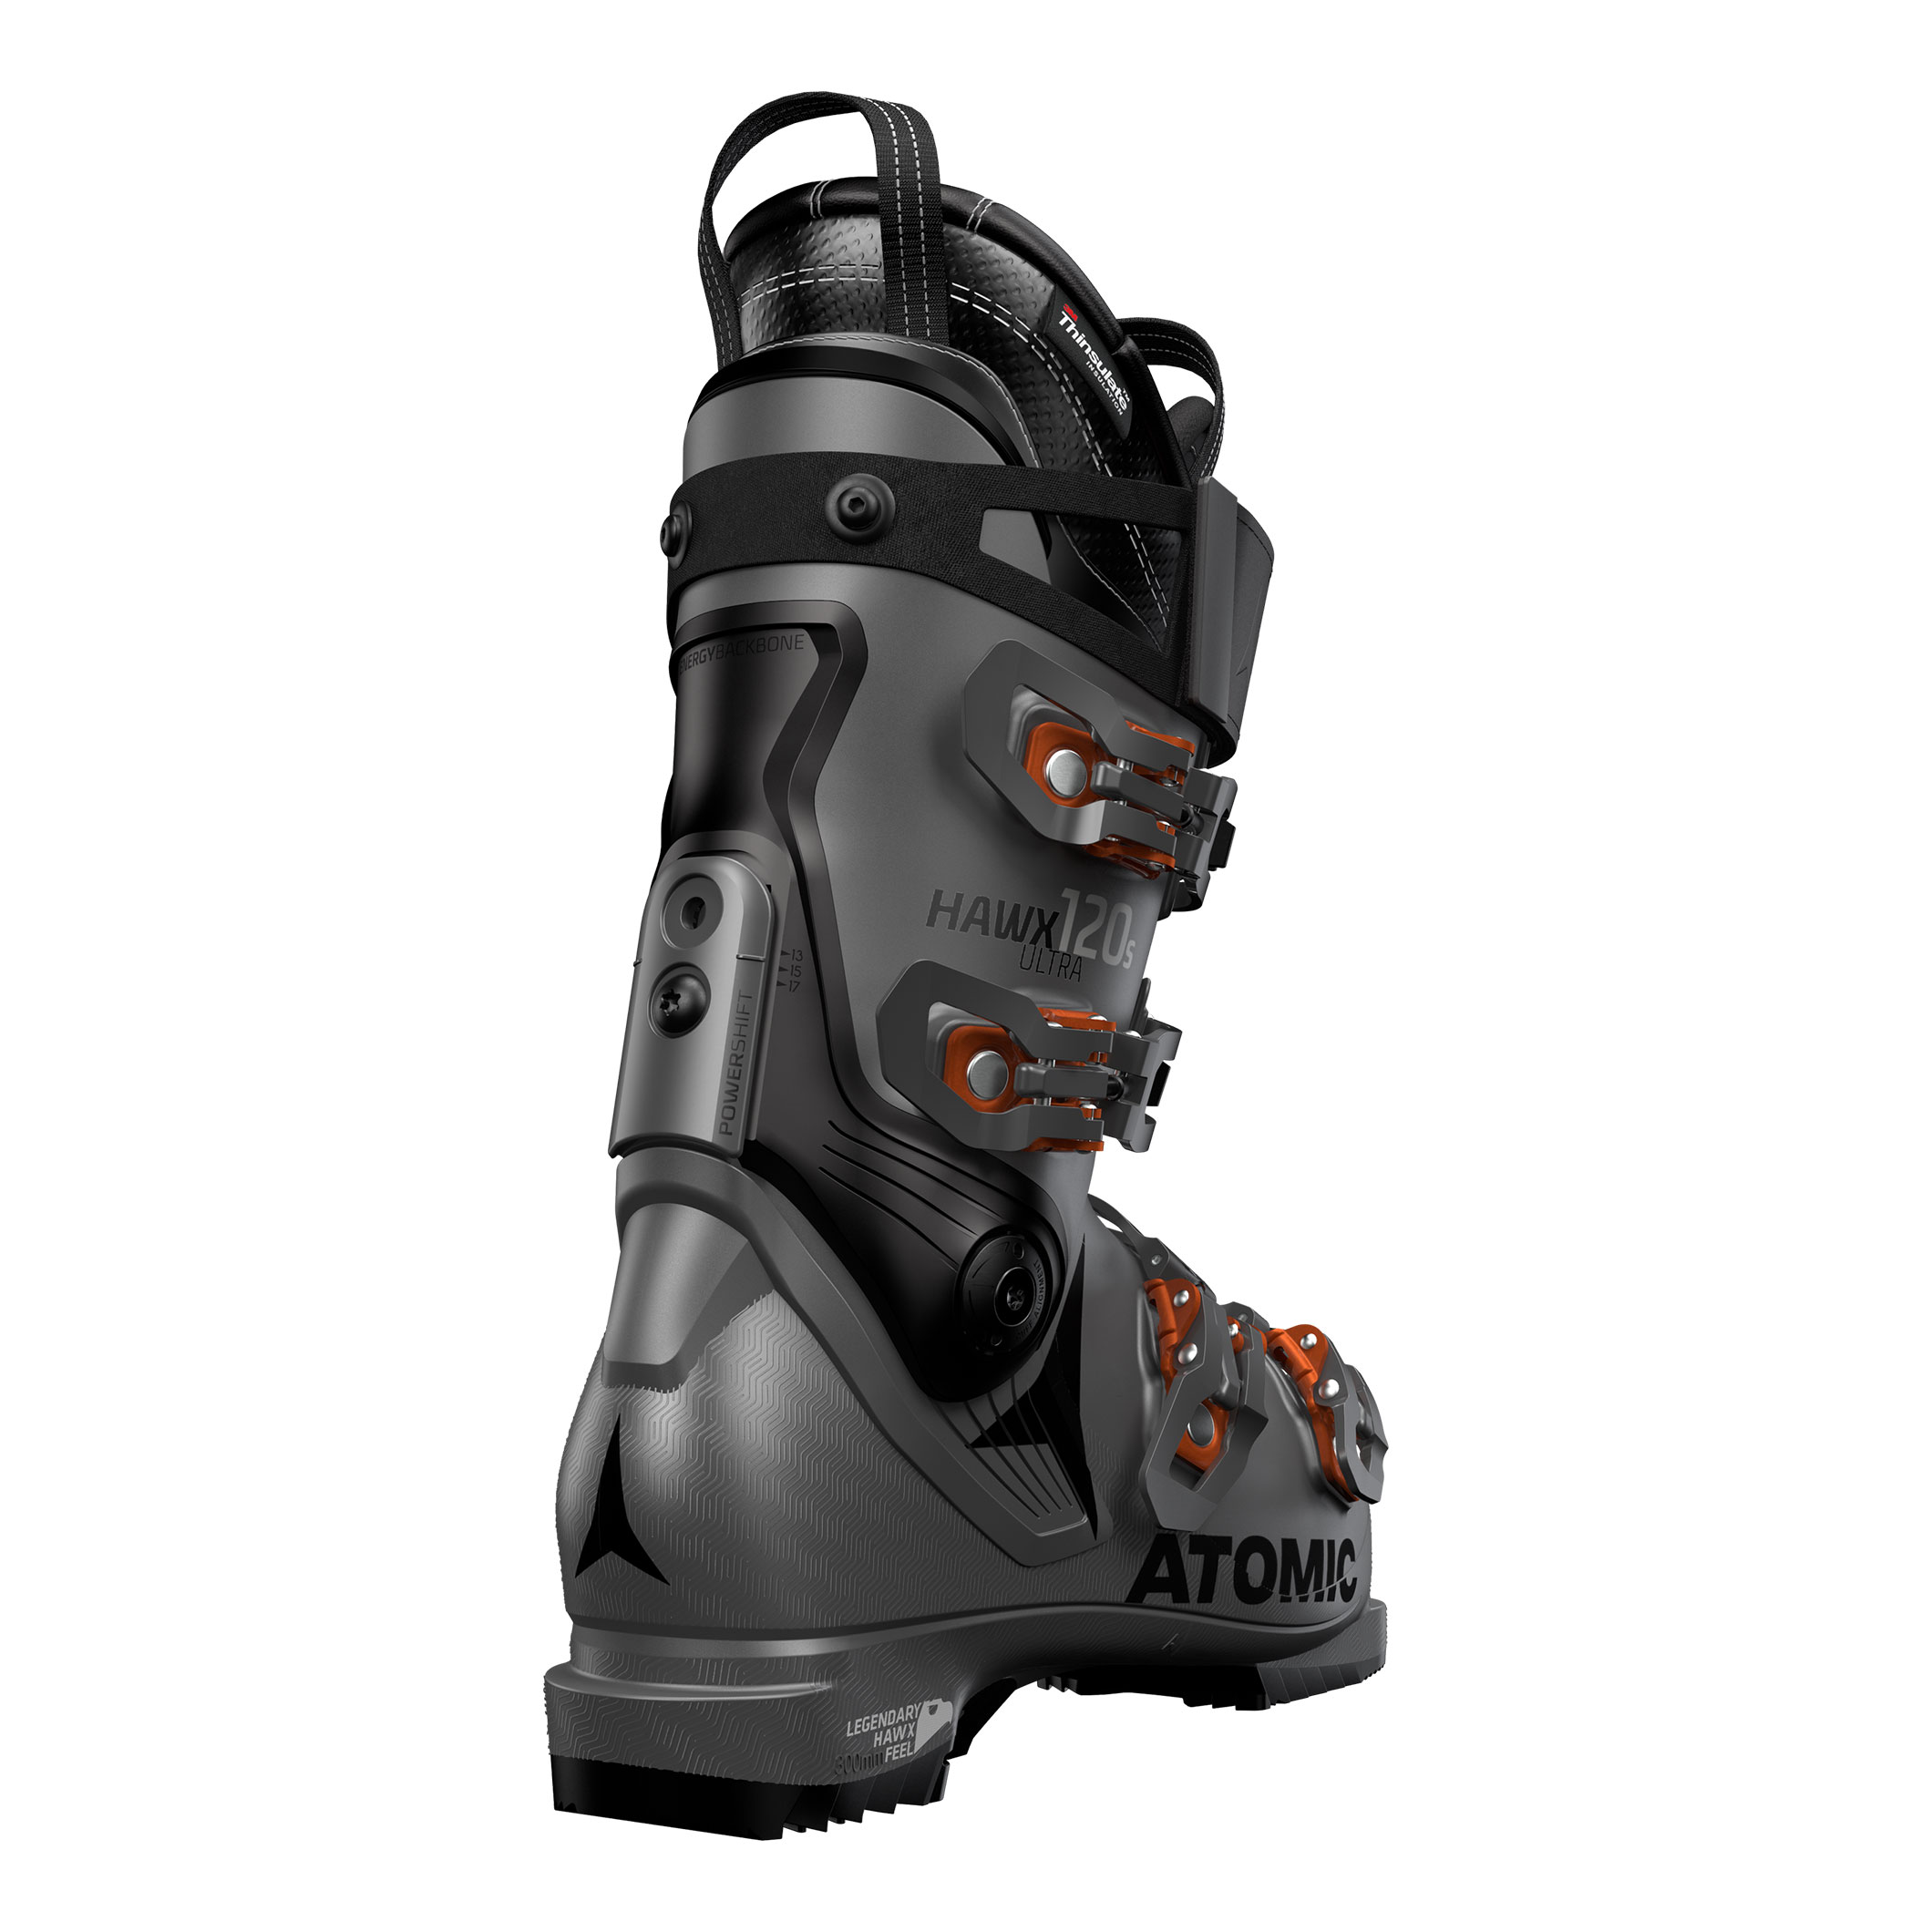 Ski Boots -  atomic Hawx Ultra 120 S